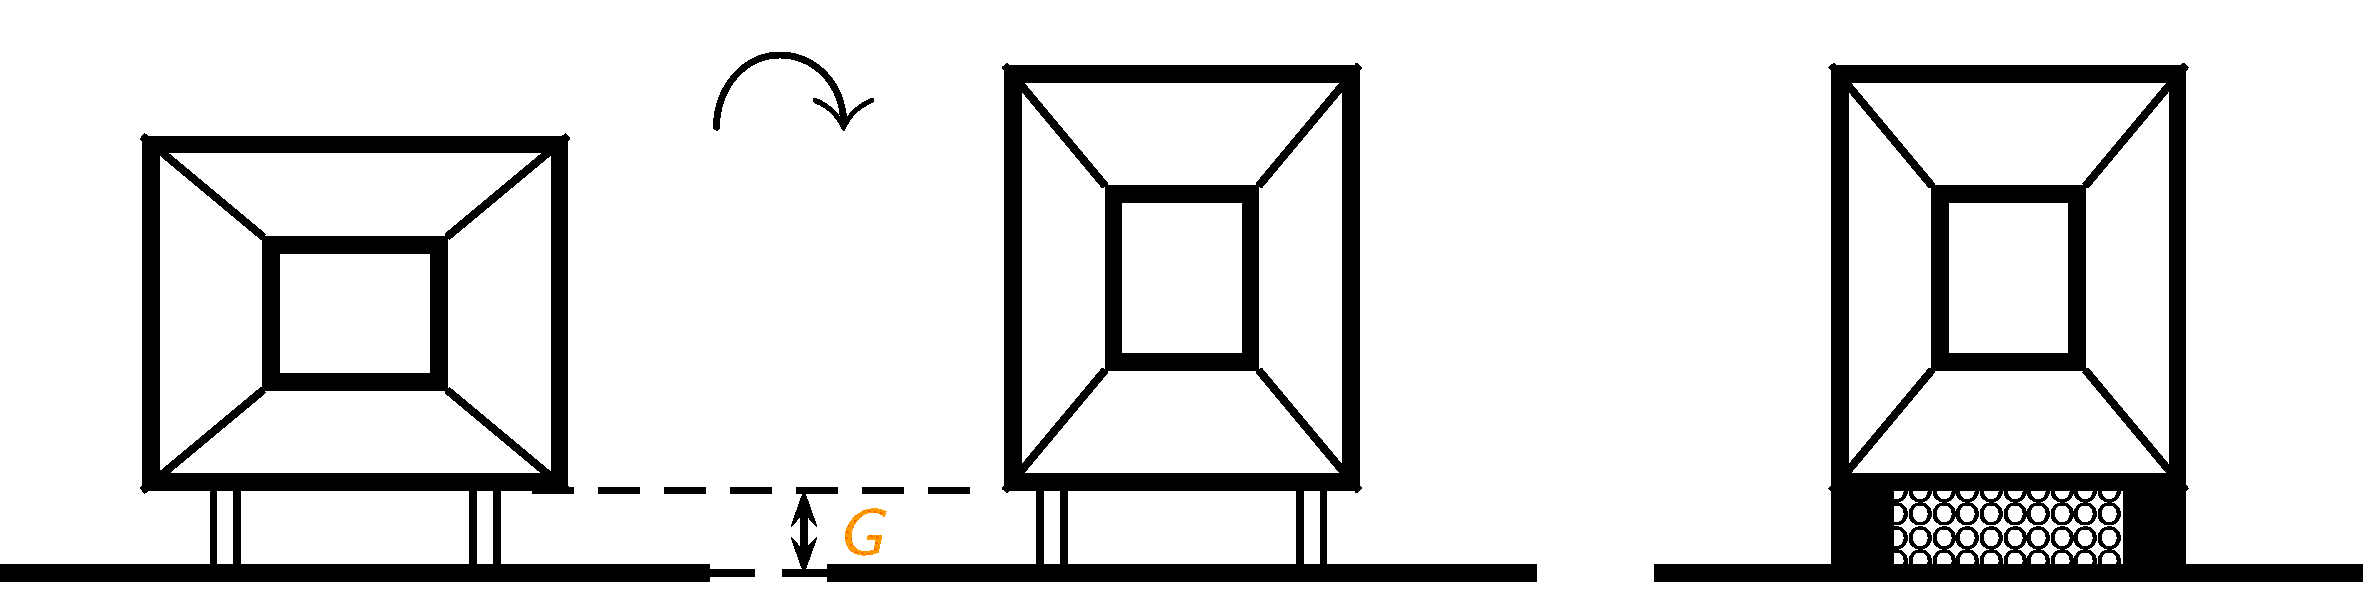 illustration des différentes positions possibles pour la maquette